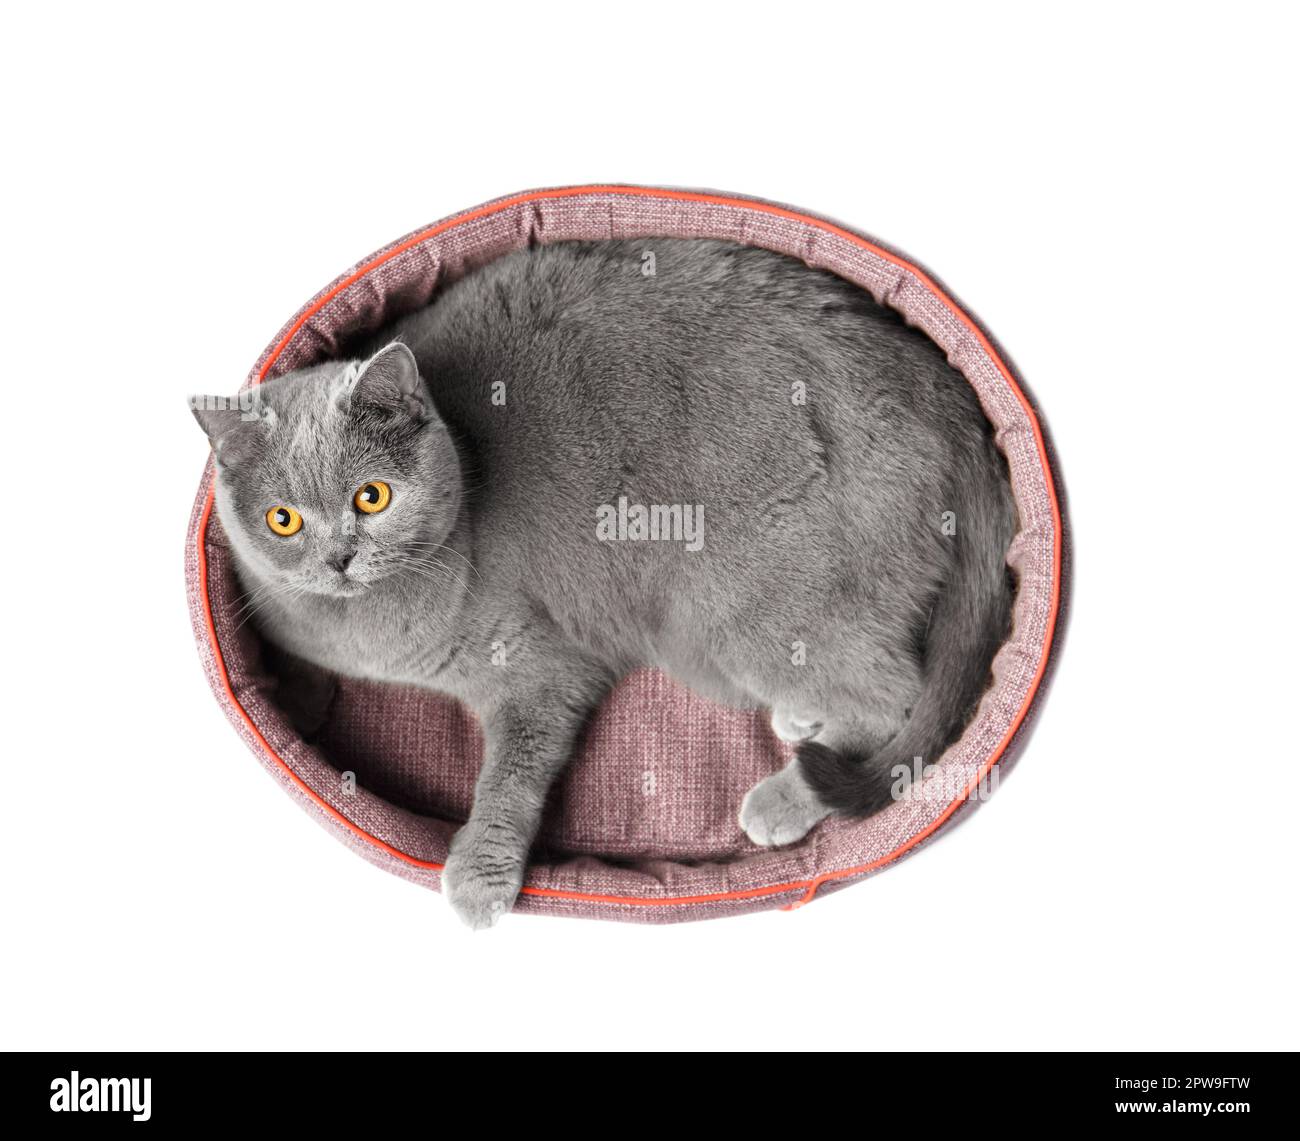 Le chat britannique se trouve dans un lit d'animal doux et regarde l'appareil photo sur un fond blanc, accessoires pour animaux. Banque D'Images